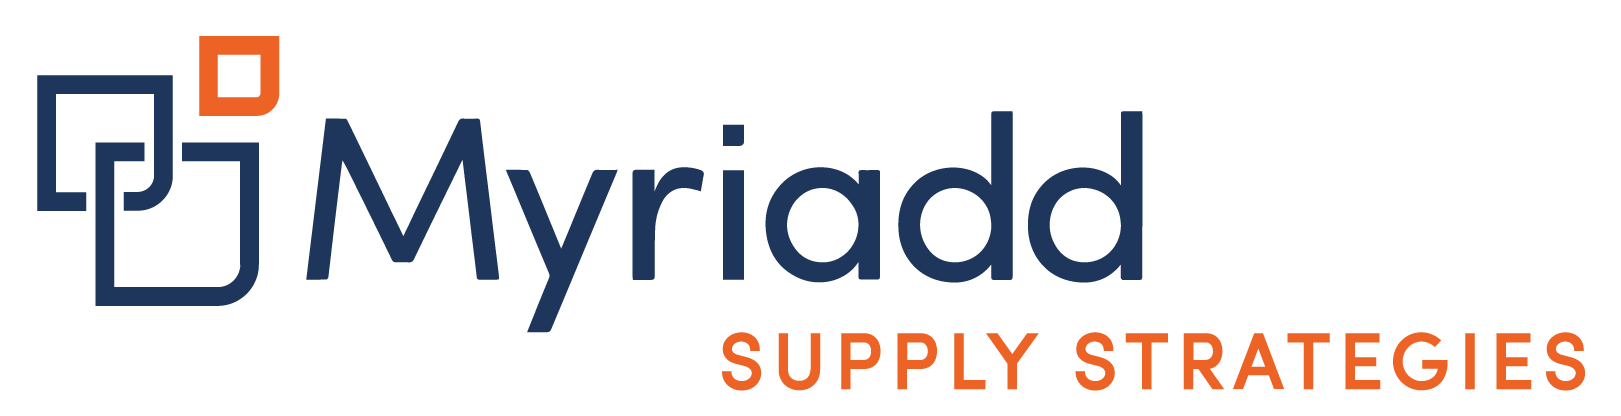 Myriadd Supply Strategies Logo